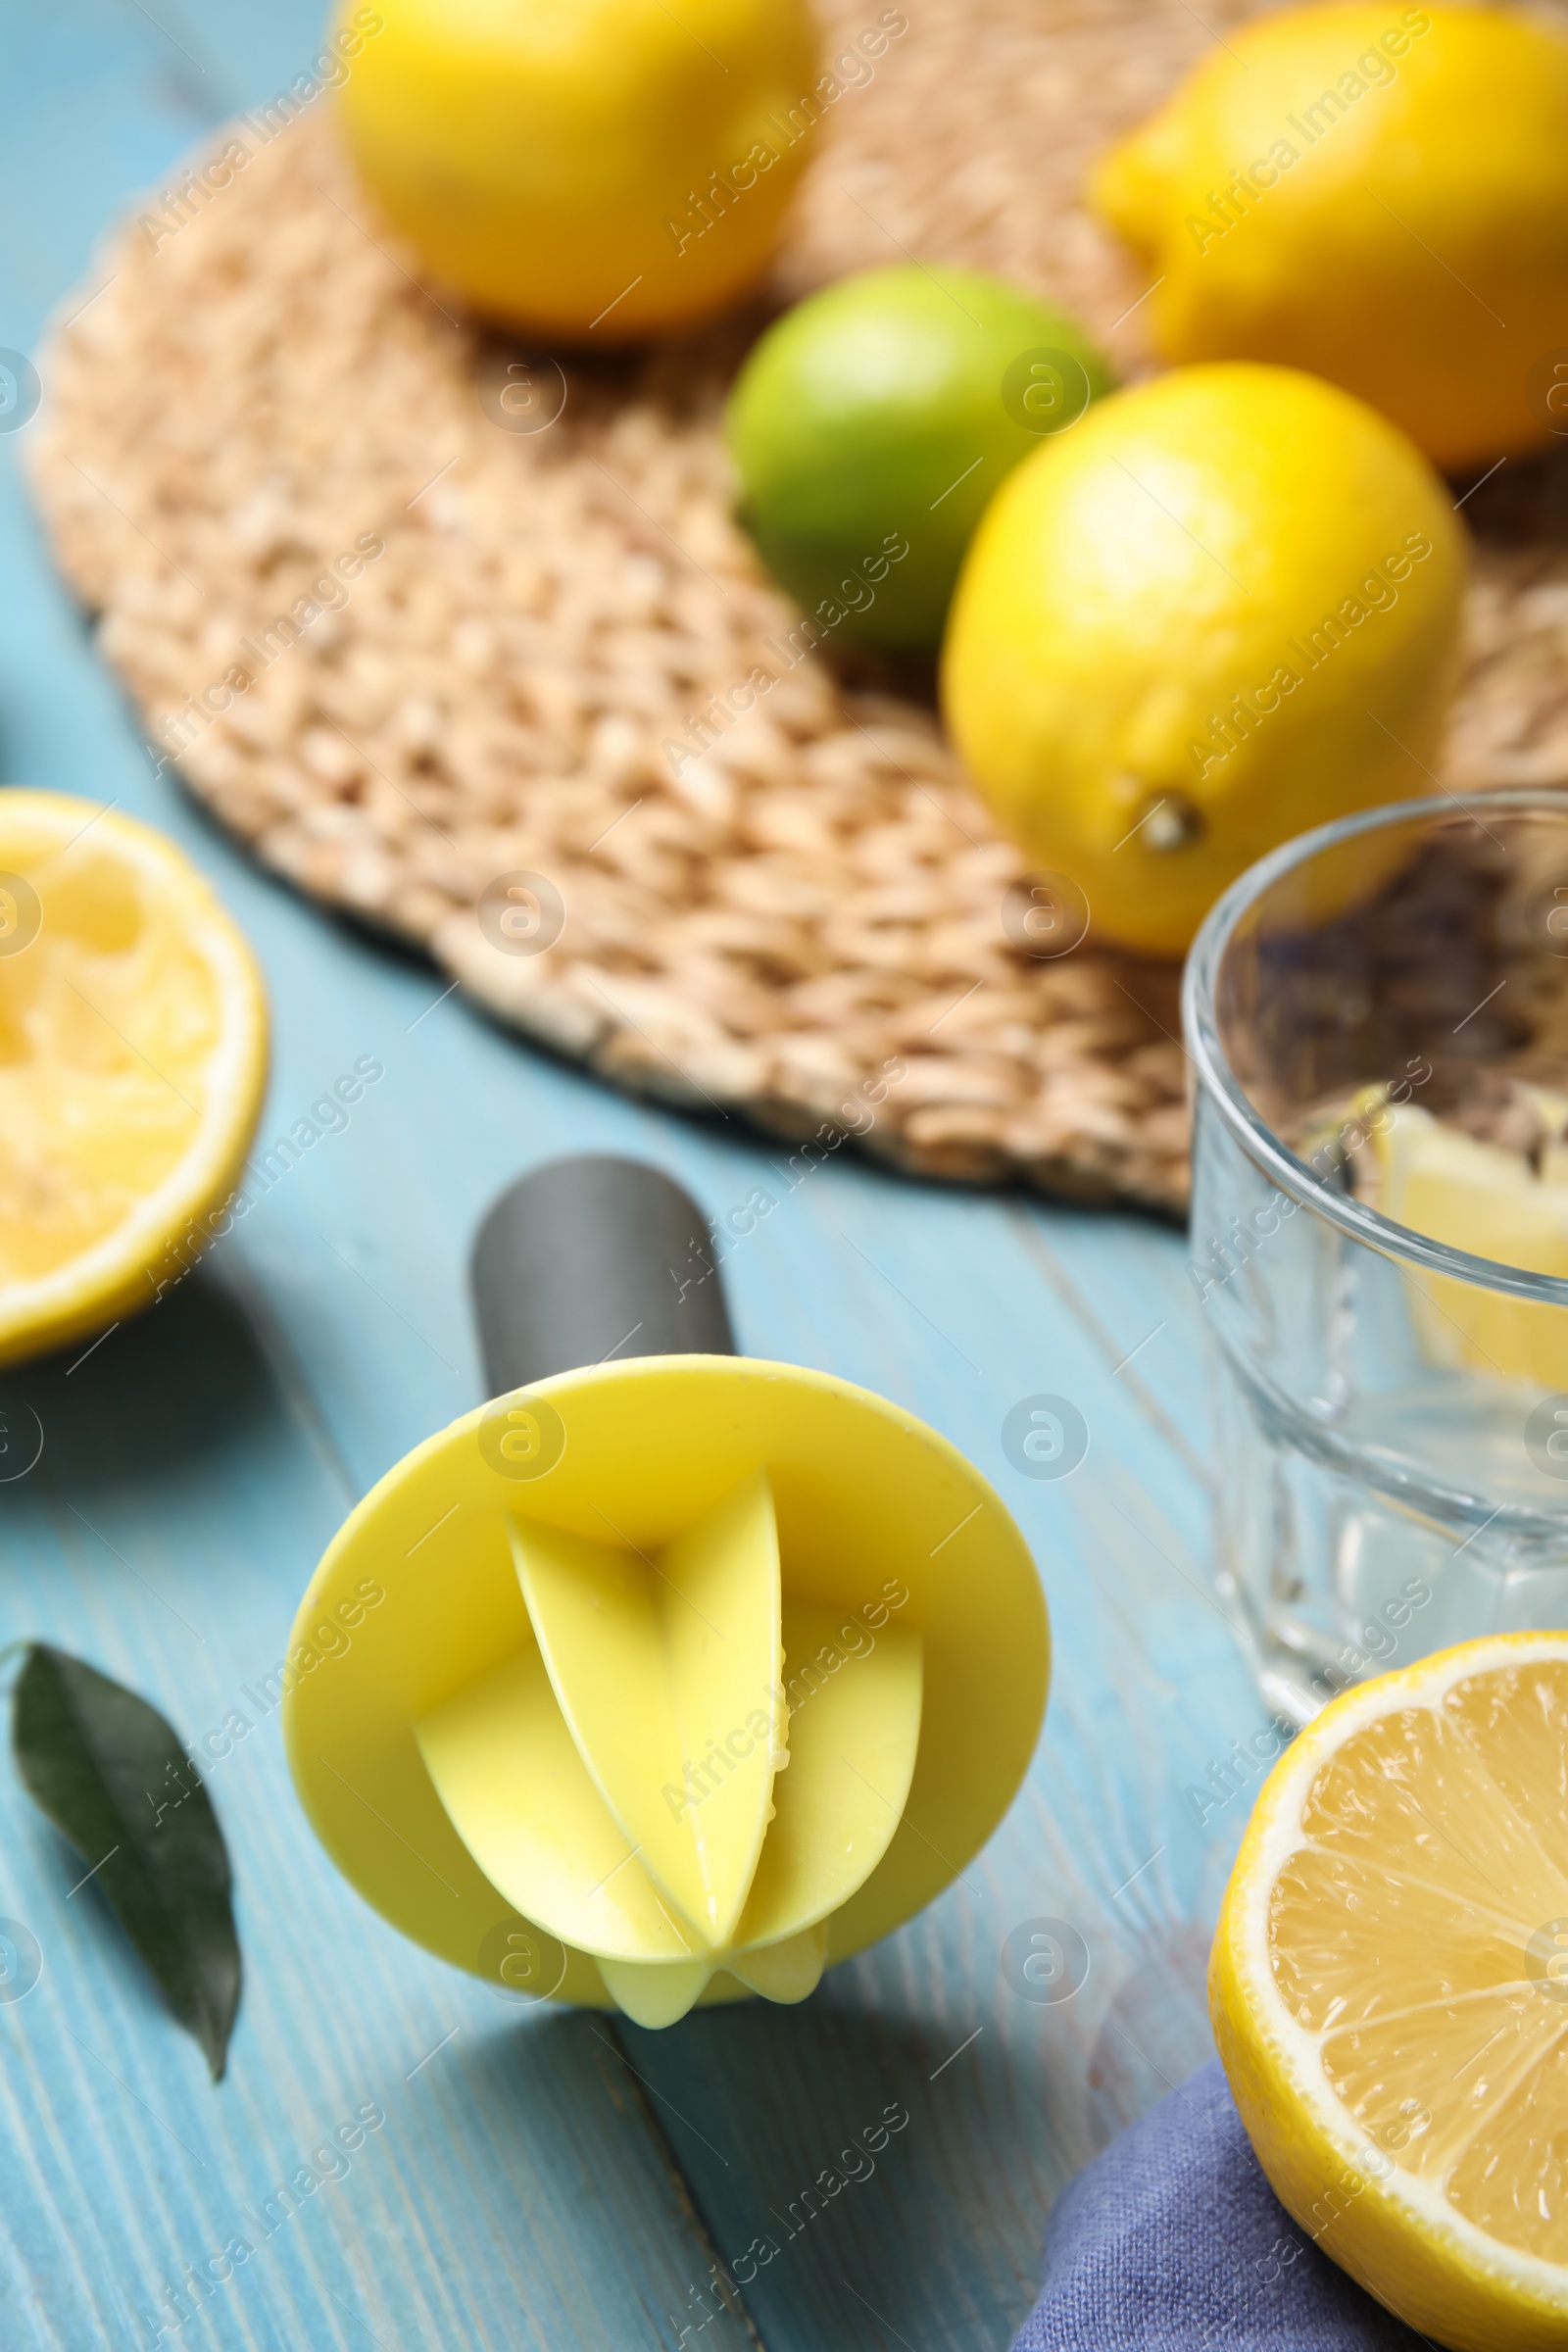 Photo of Citrus reamer and fresh lemons on light blue wooden table